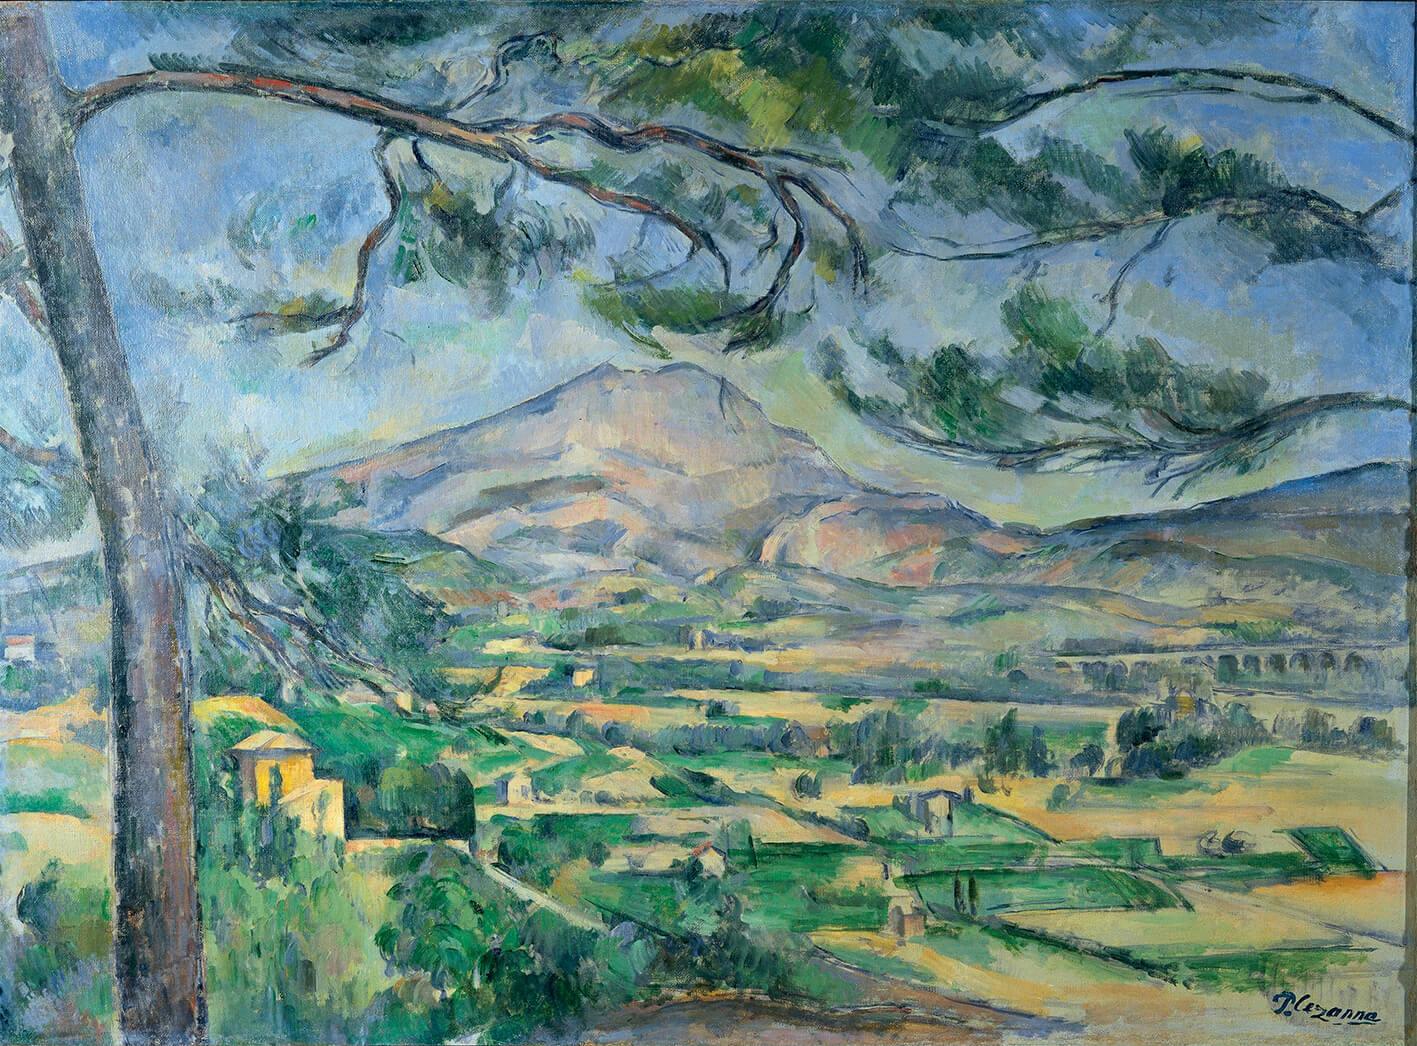 Pilt Paul Cezanne - To Kɔkɔe Victoire 2